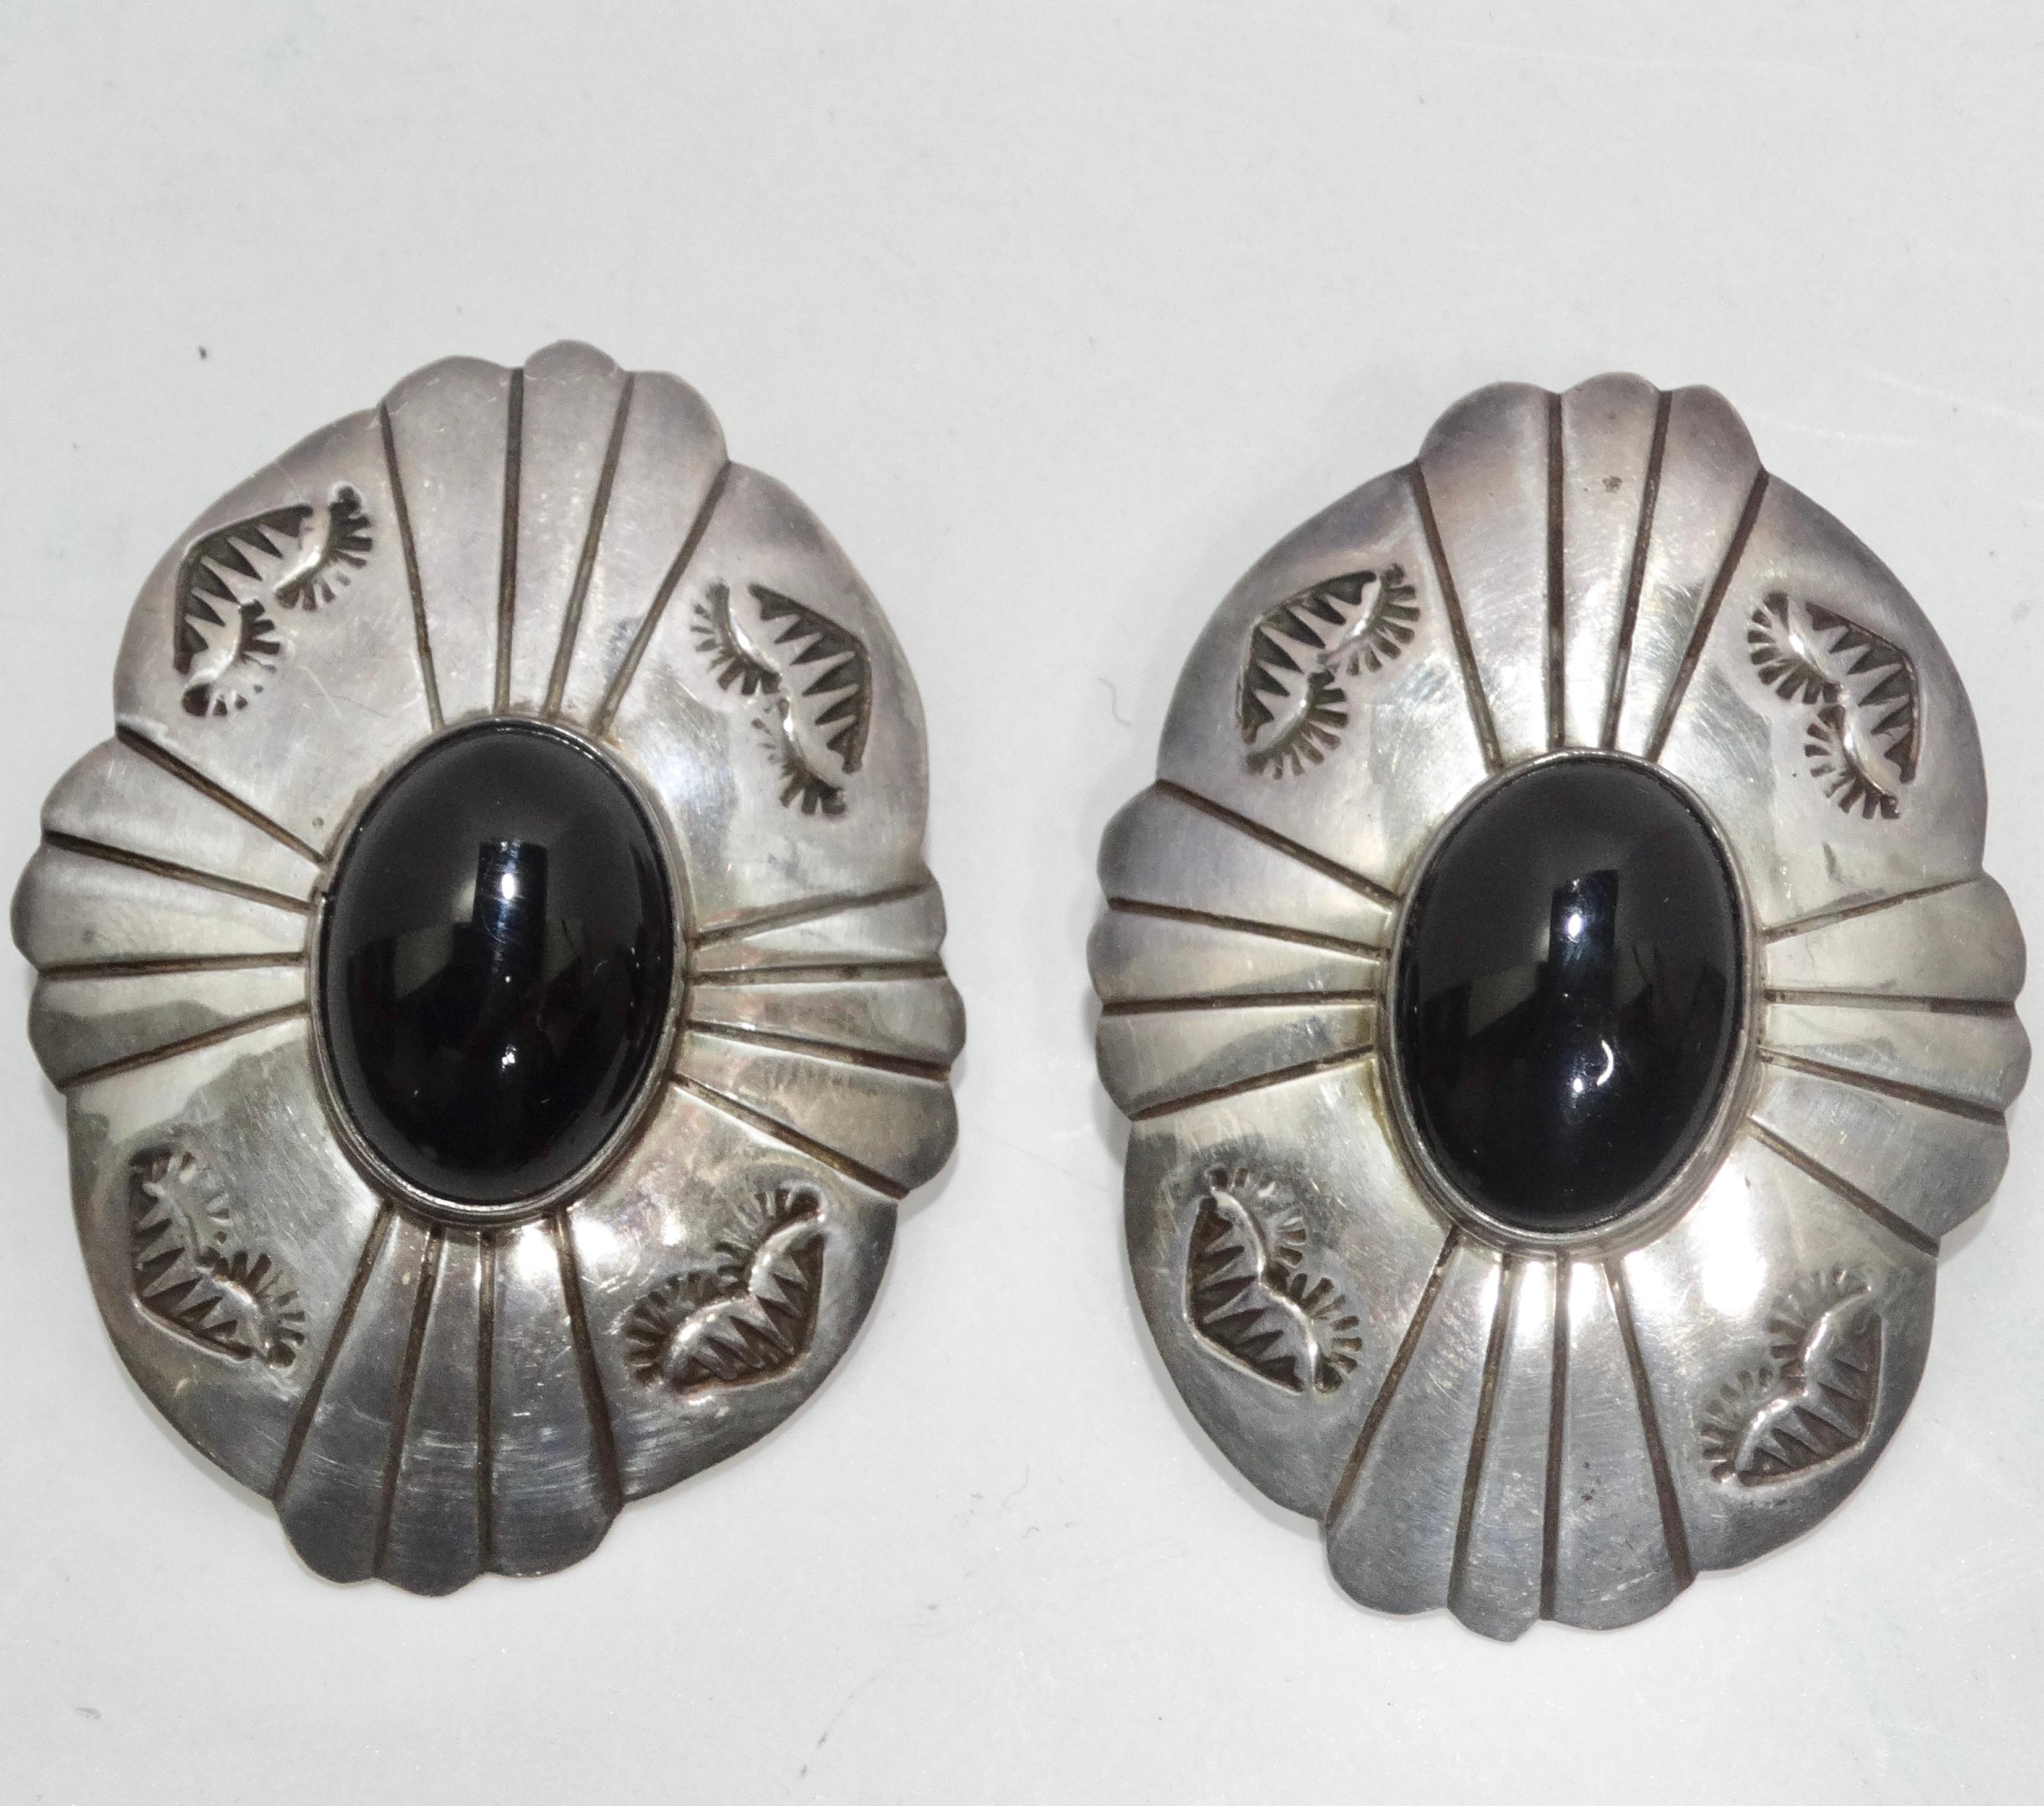 Die 1970er Onyx Statement-Ohrringe aus Silber - ein Paar Ohrringe, das mühelos zeitlose Eleganz mit auffälligem Charme verbindet. Diese Ohrringe sind nicht nur ein Accessoire, sondern ein tragbares Kunstwerk, das die Essenz der Vintage-Raffinesse